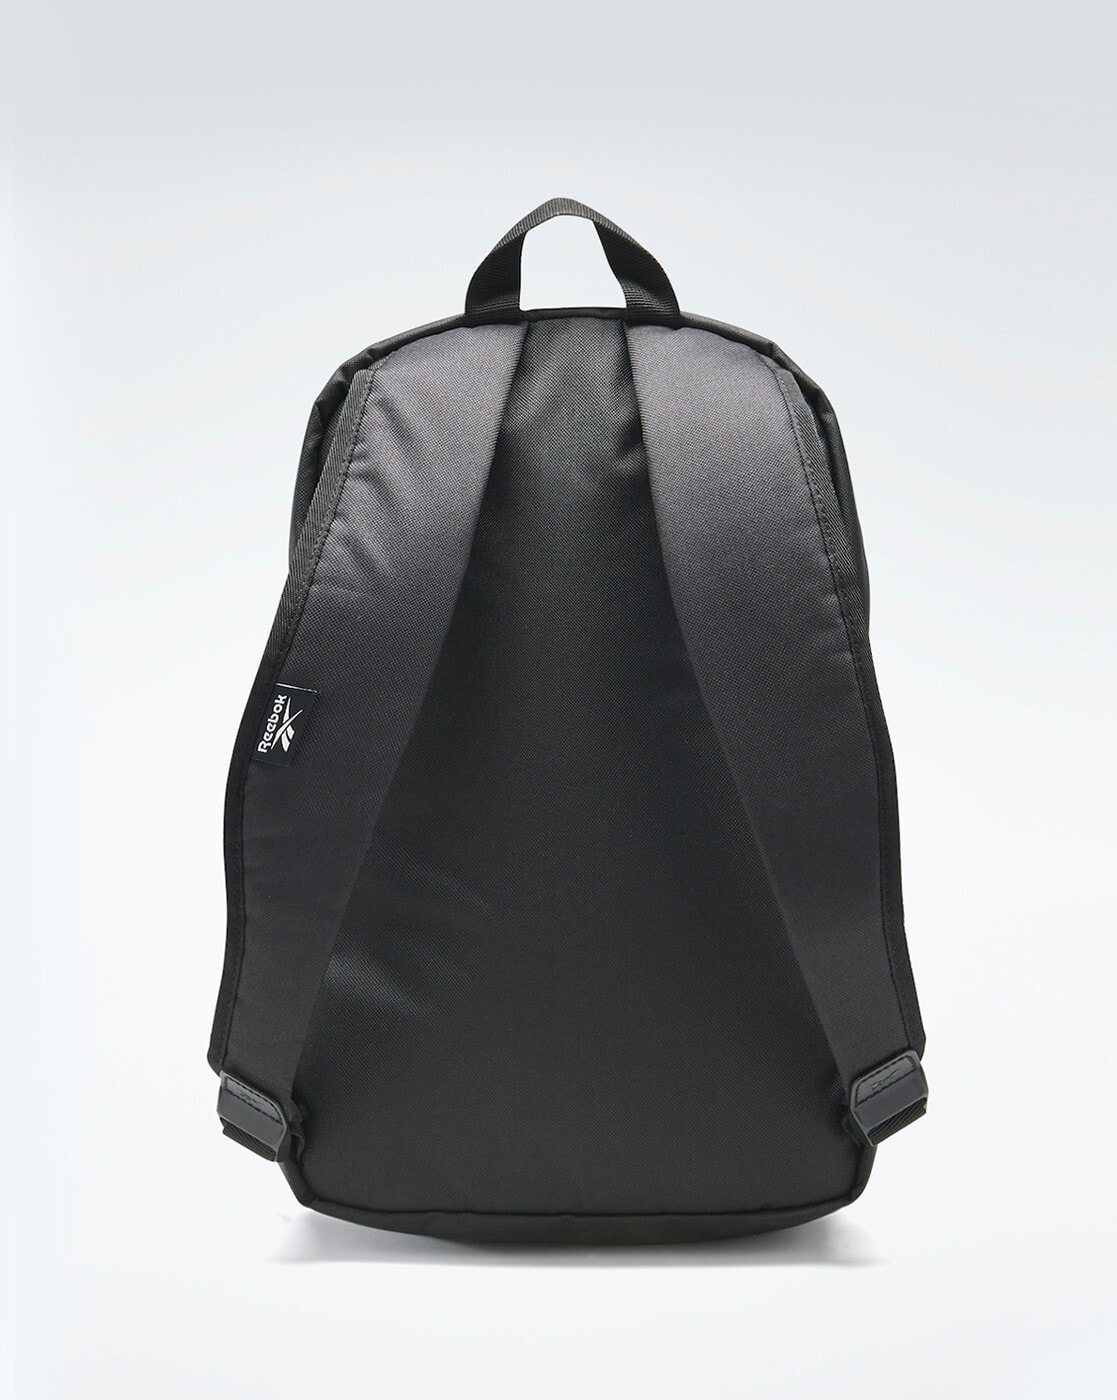 Shop Bags & Backpacks | Reebok – Reebok Australia